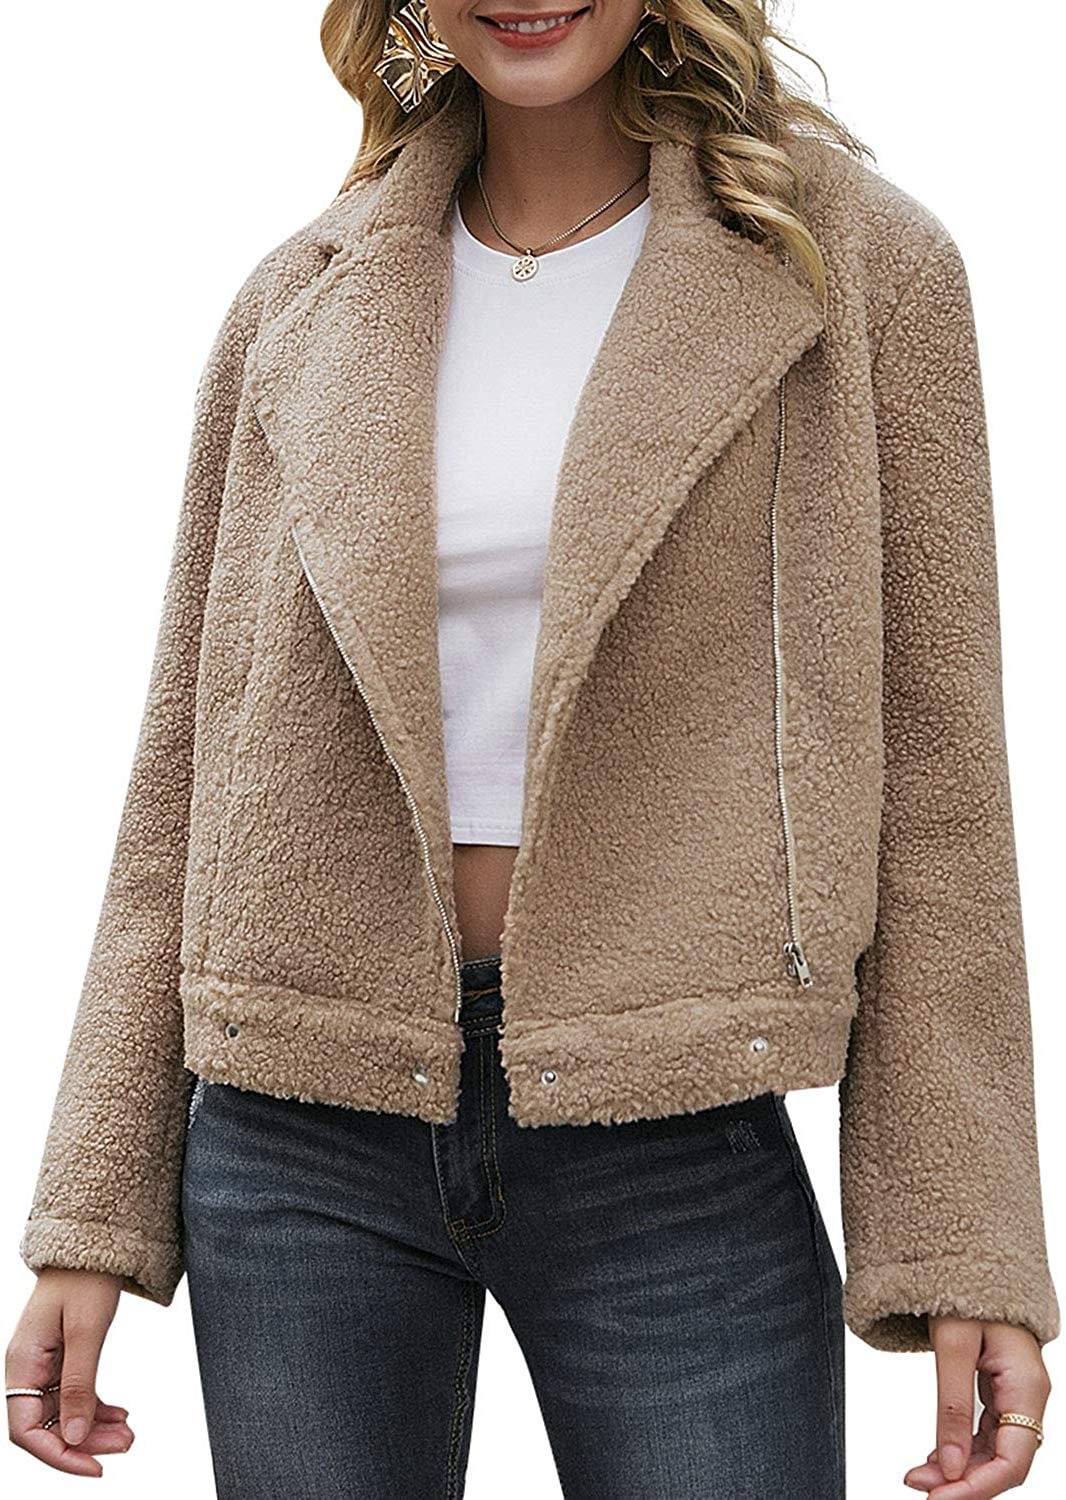 Women's Lapel Zip Up Faux Fleece Shearing Jacket Winter Overcoat with Pockets